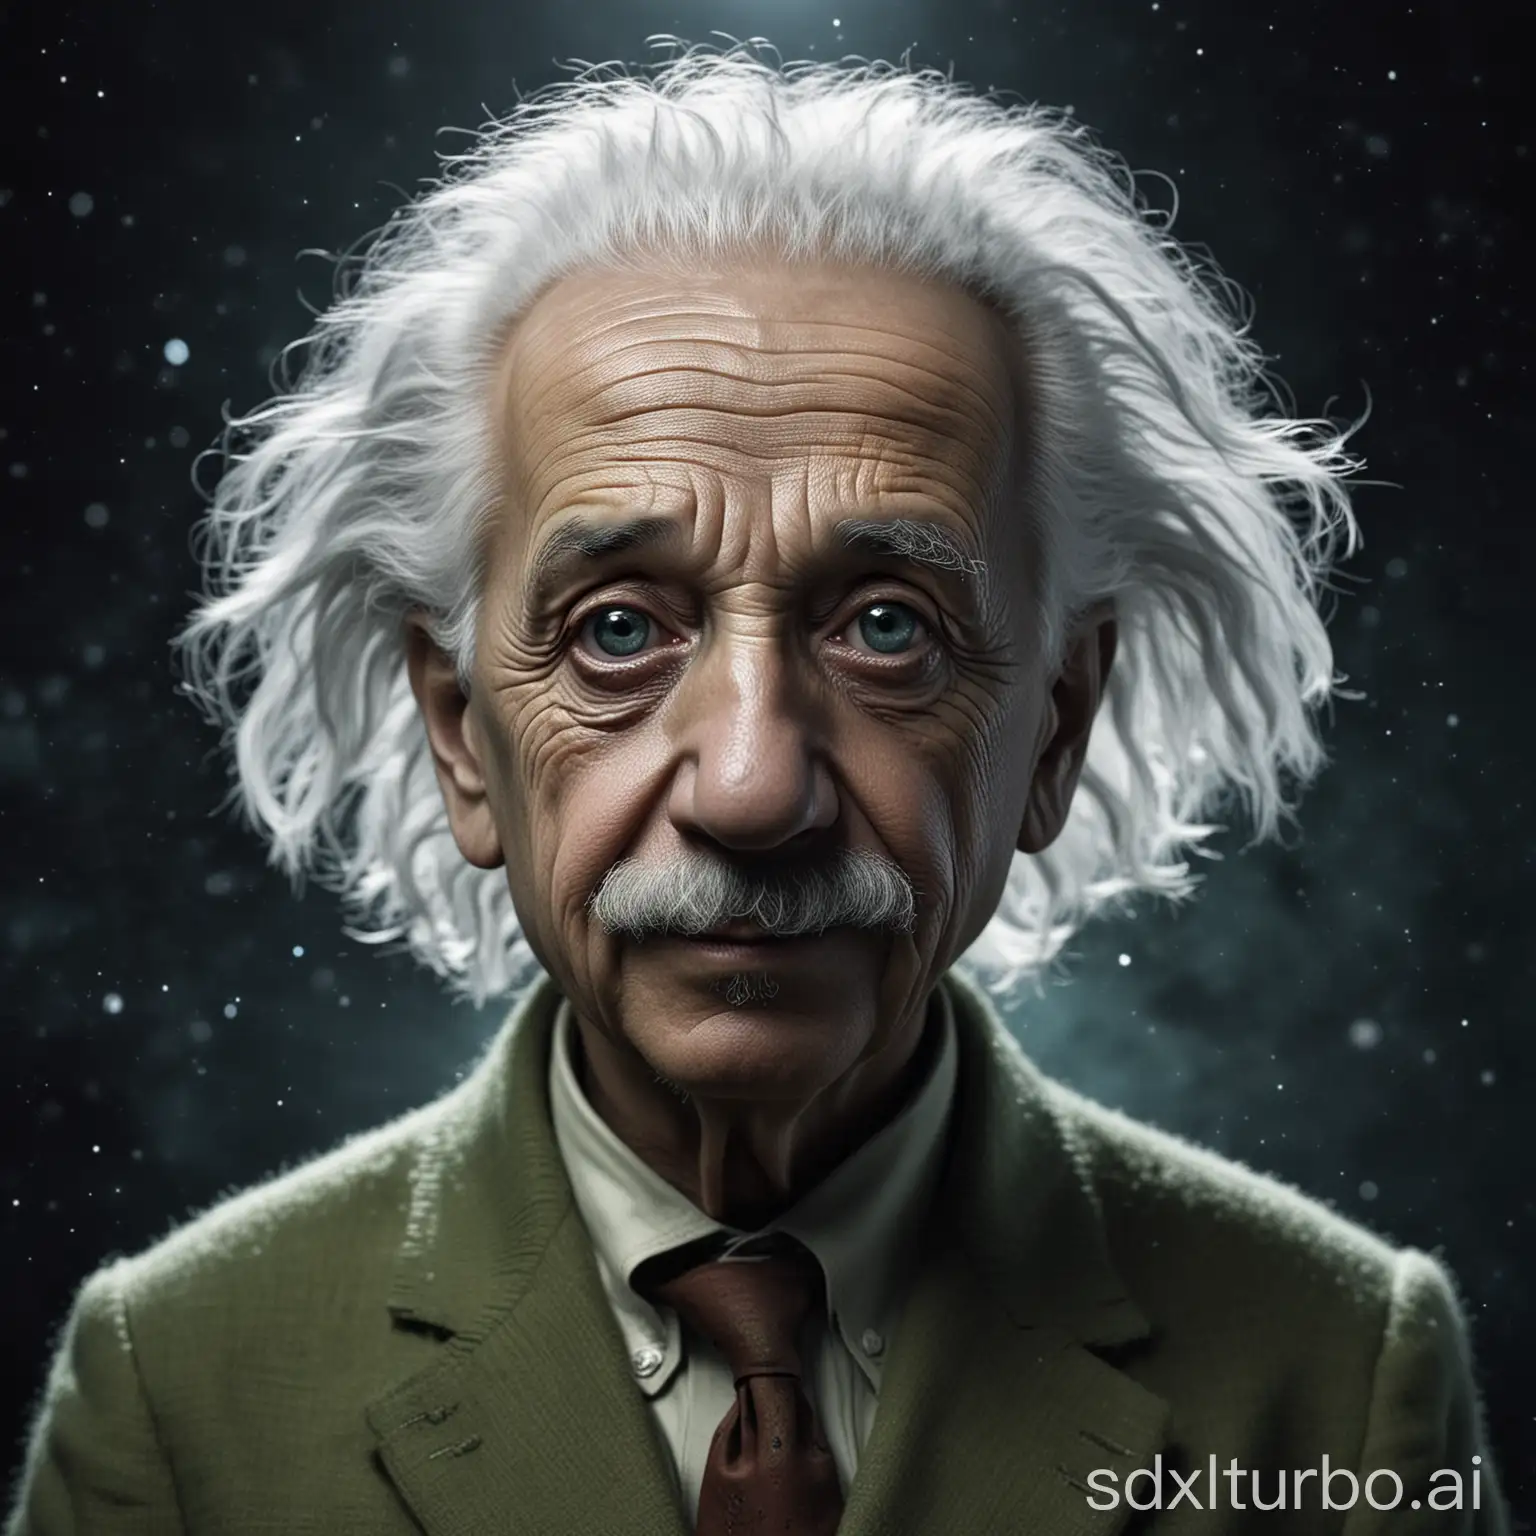 Albert-Einstein-as-an-Alien-Genius-Extraterrestrial-Portrait